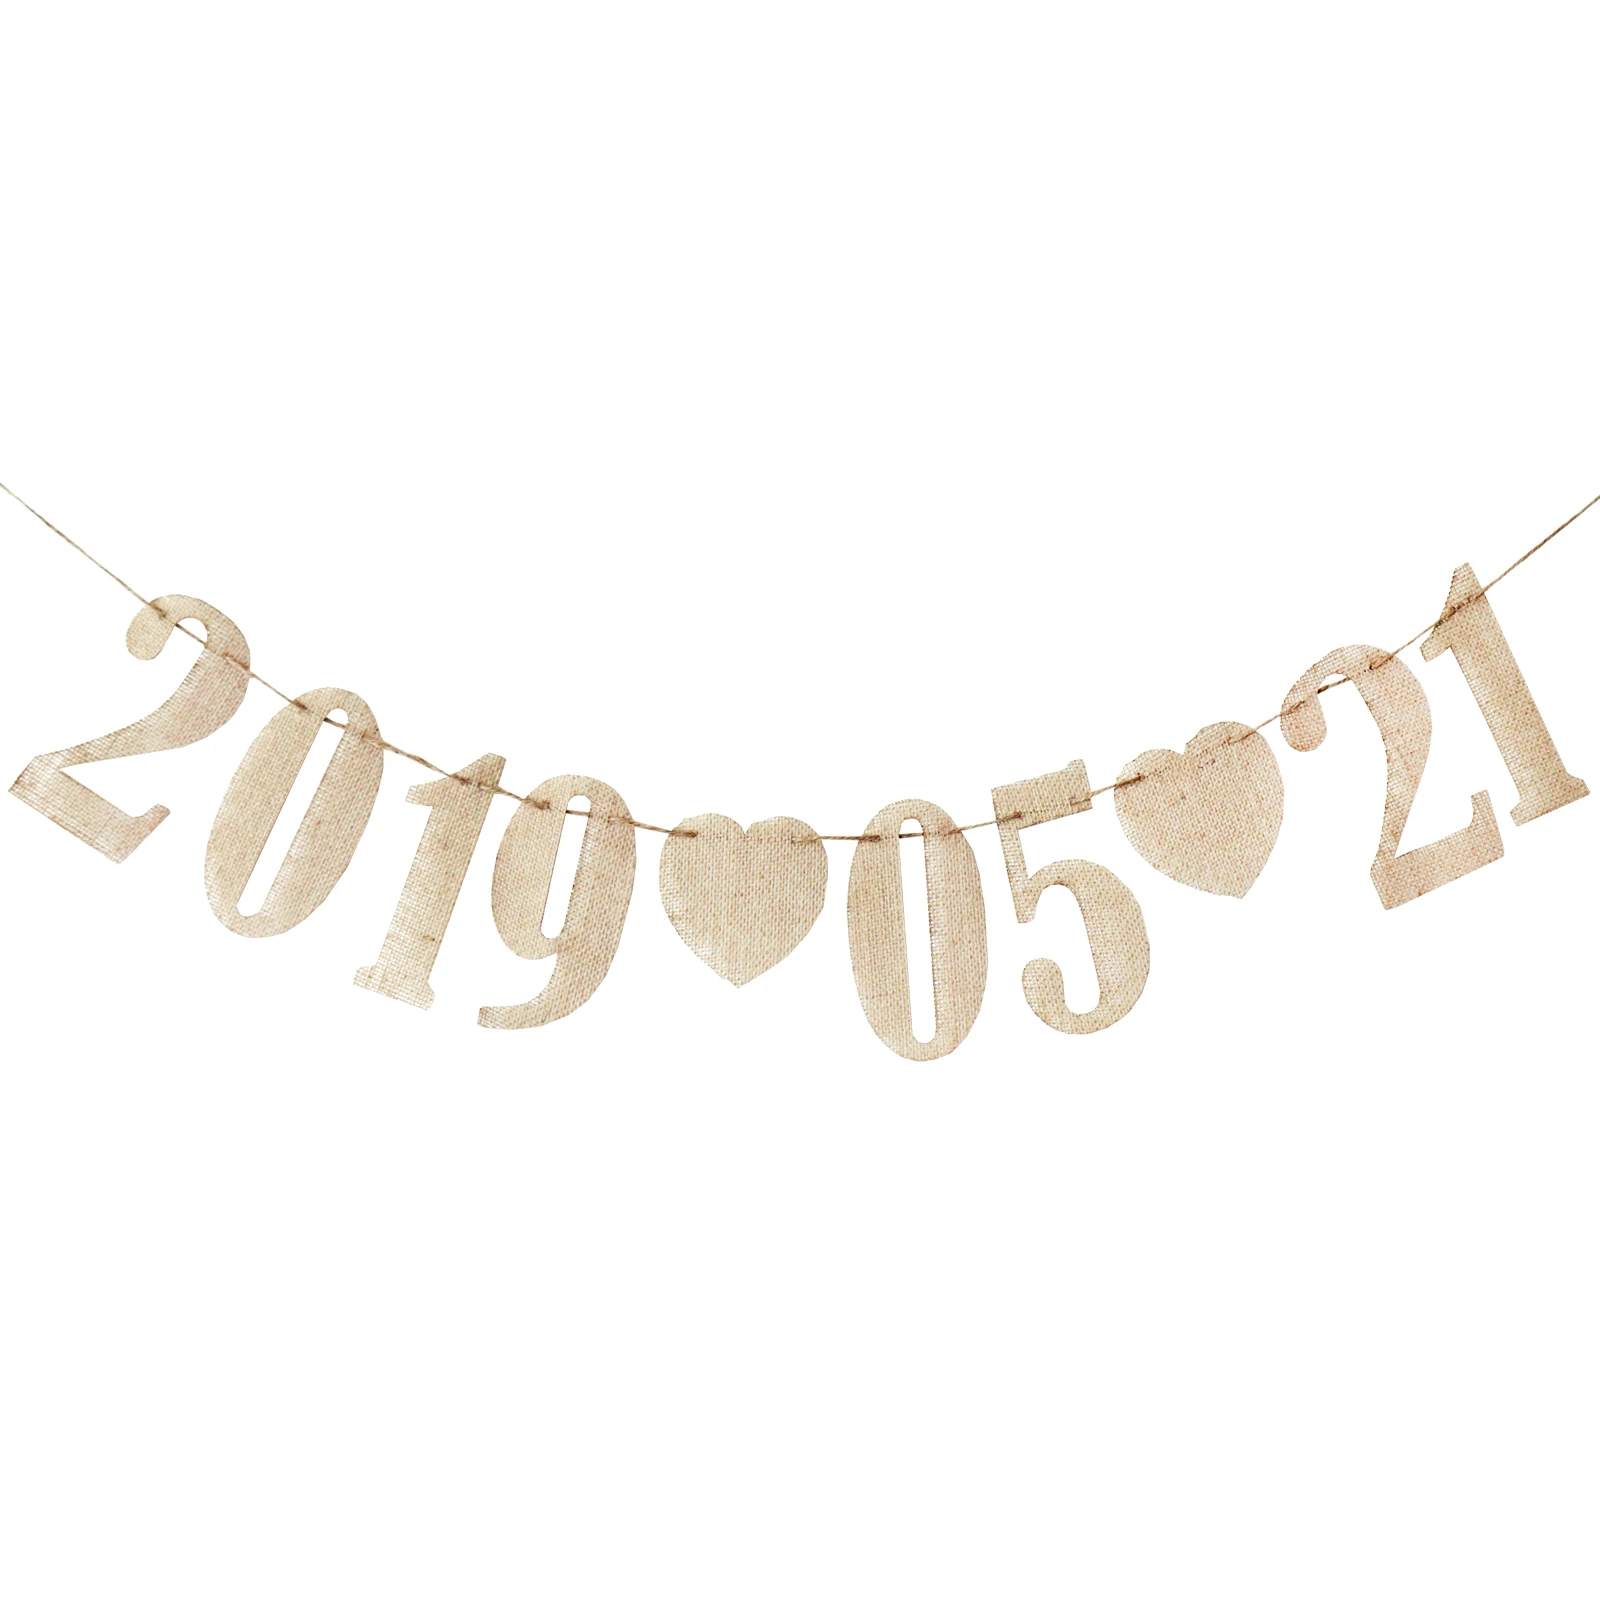 Hessian джутовая Мешковина с цифрами и сердечками, украшение для стола 0-9, табличка «сделай сам», баннерная гирлянда с днем рождения, для свадебной вечеринки